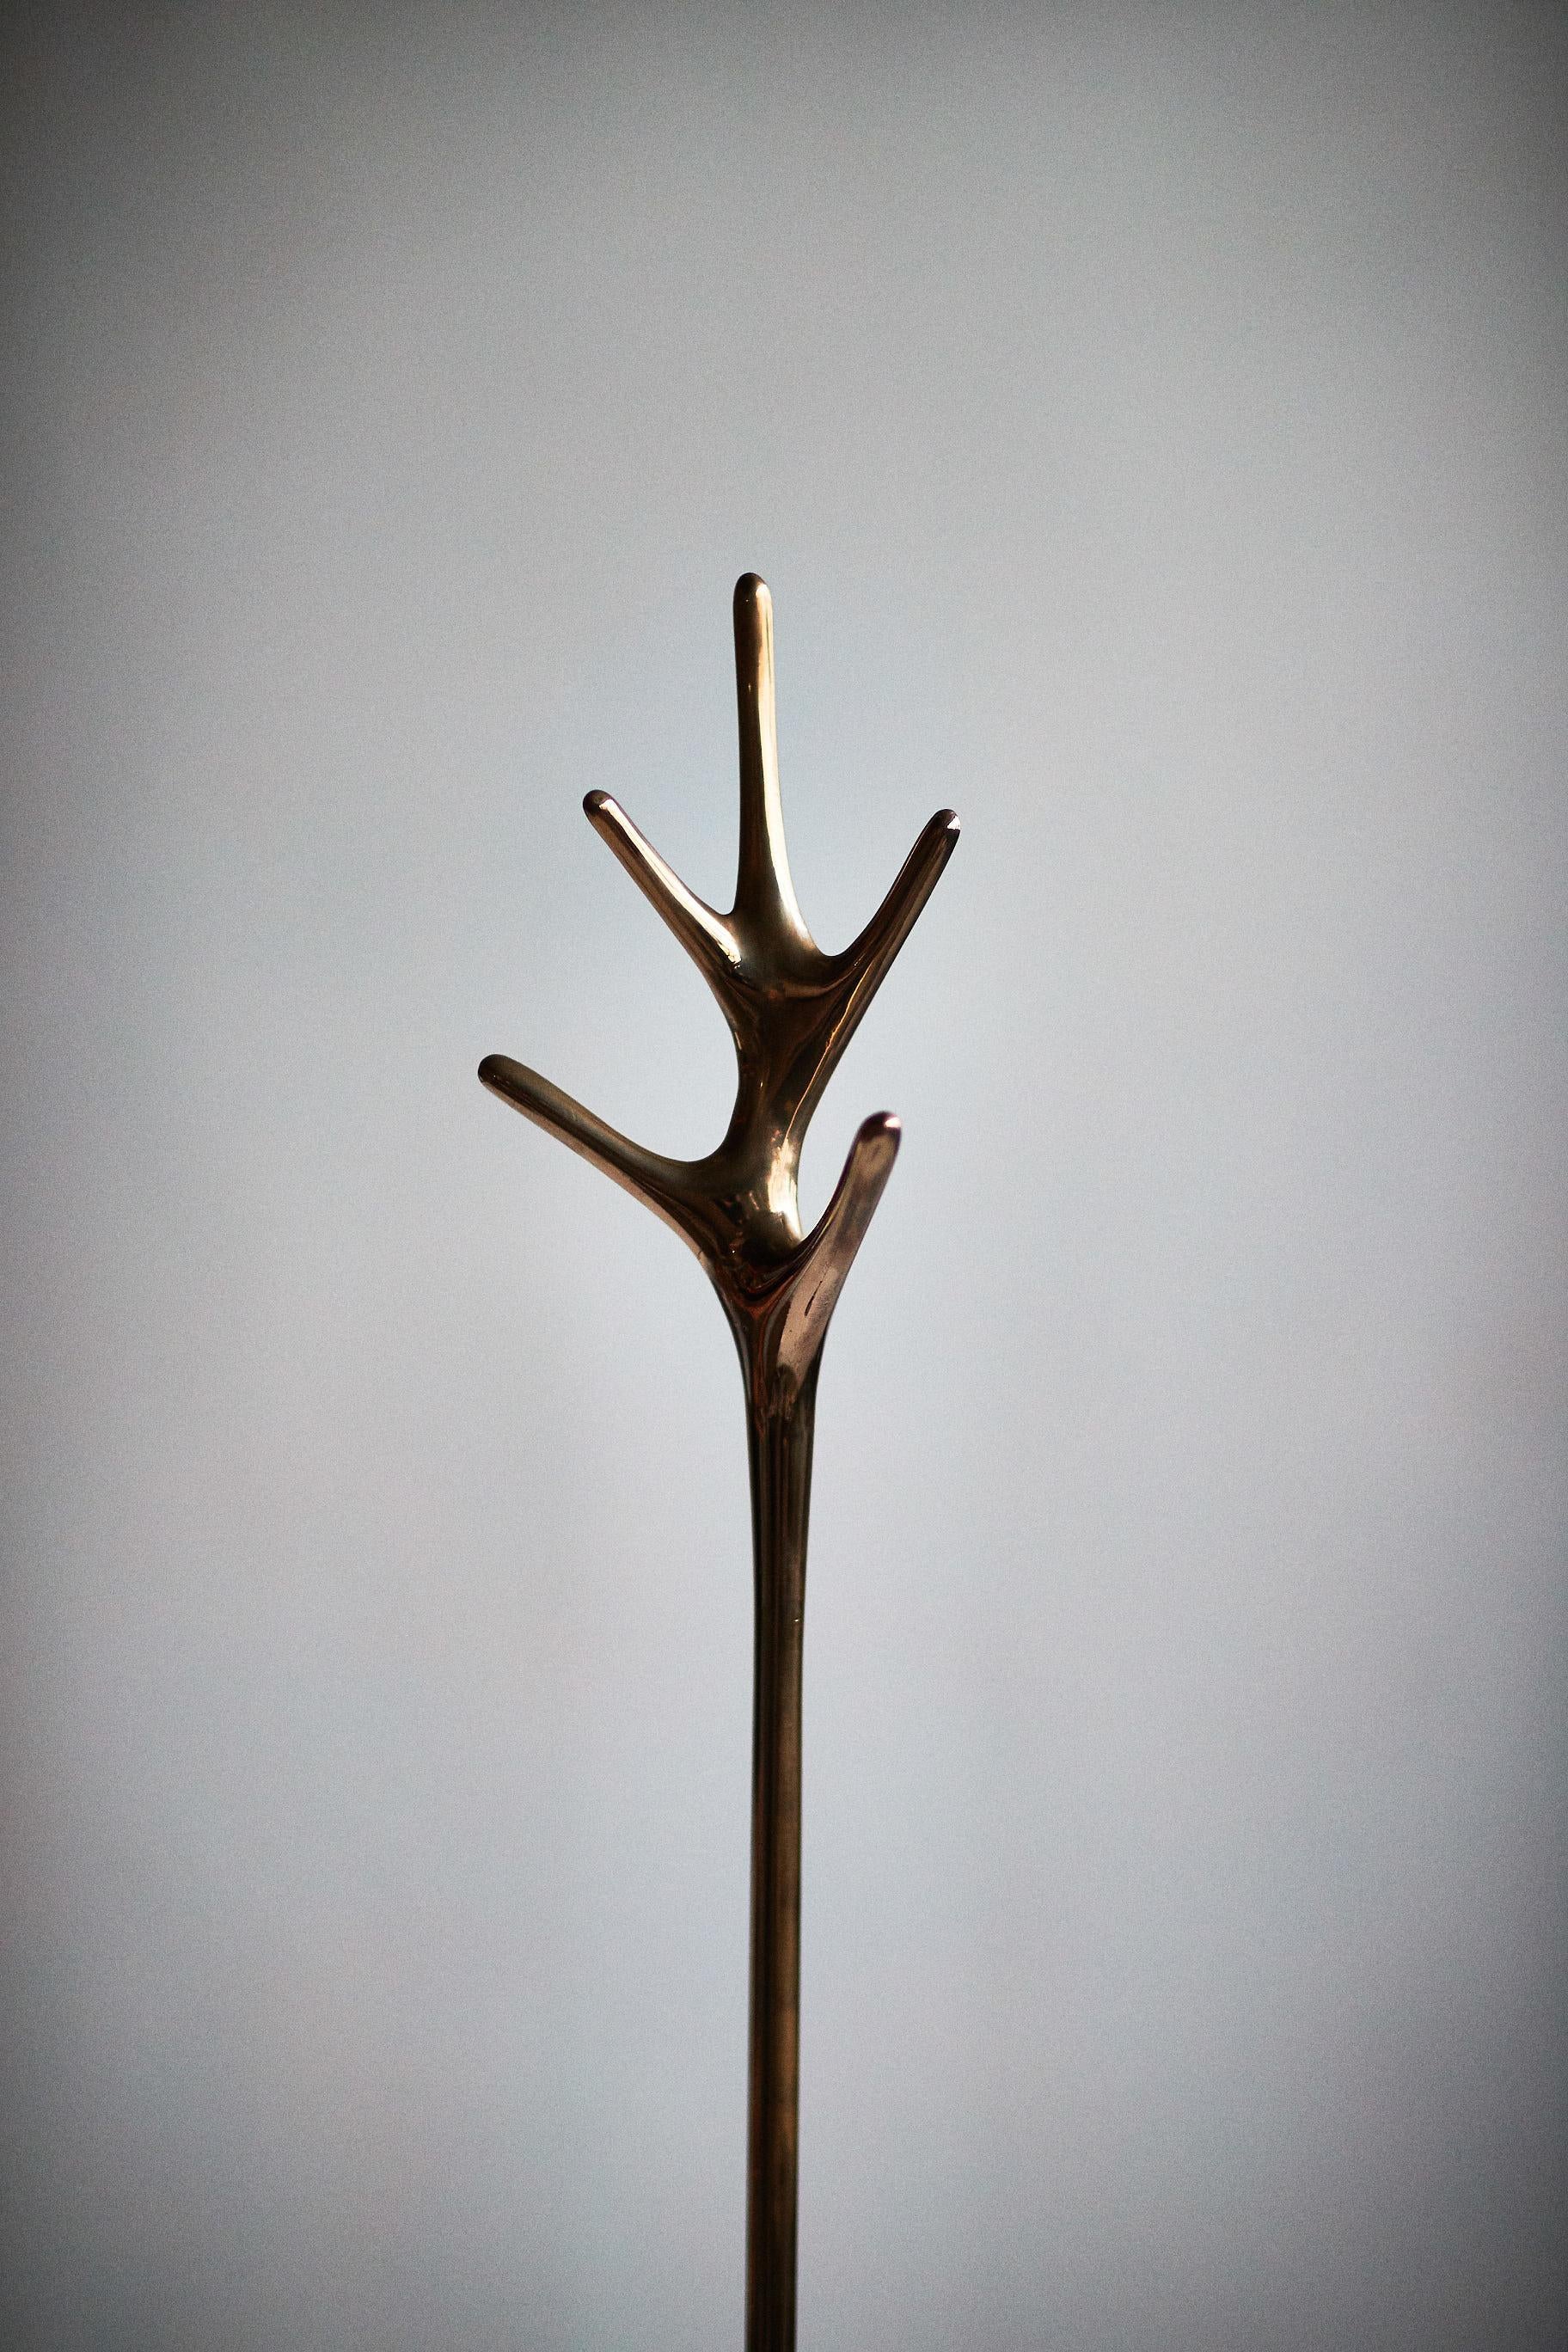 Conçue par Daniel Barbera, la lampe Lovelock est fabriquée à partir d'une base en bronze massif coulé au sable et finie à la main pour obtenir un poli miroir lisse, avec l'option d'un bronze satiné ou noirci. Sculptural et minimal, ce porte-manteau